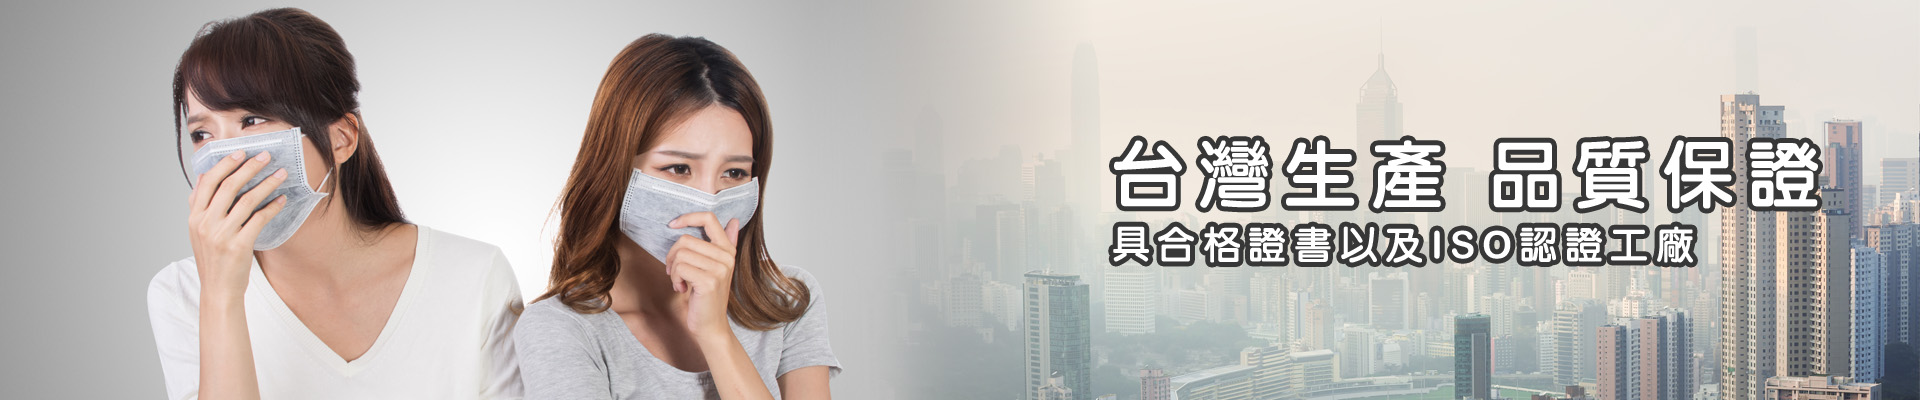 ISO認證口罩工廠|合格口罩品牌台灣優紙|提供各類口罩批發團購以及提供最專業的廣告口罩生產製造